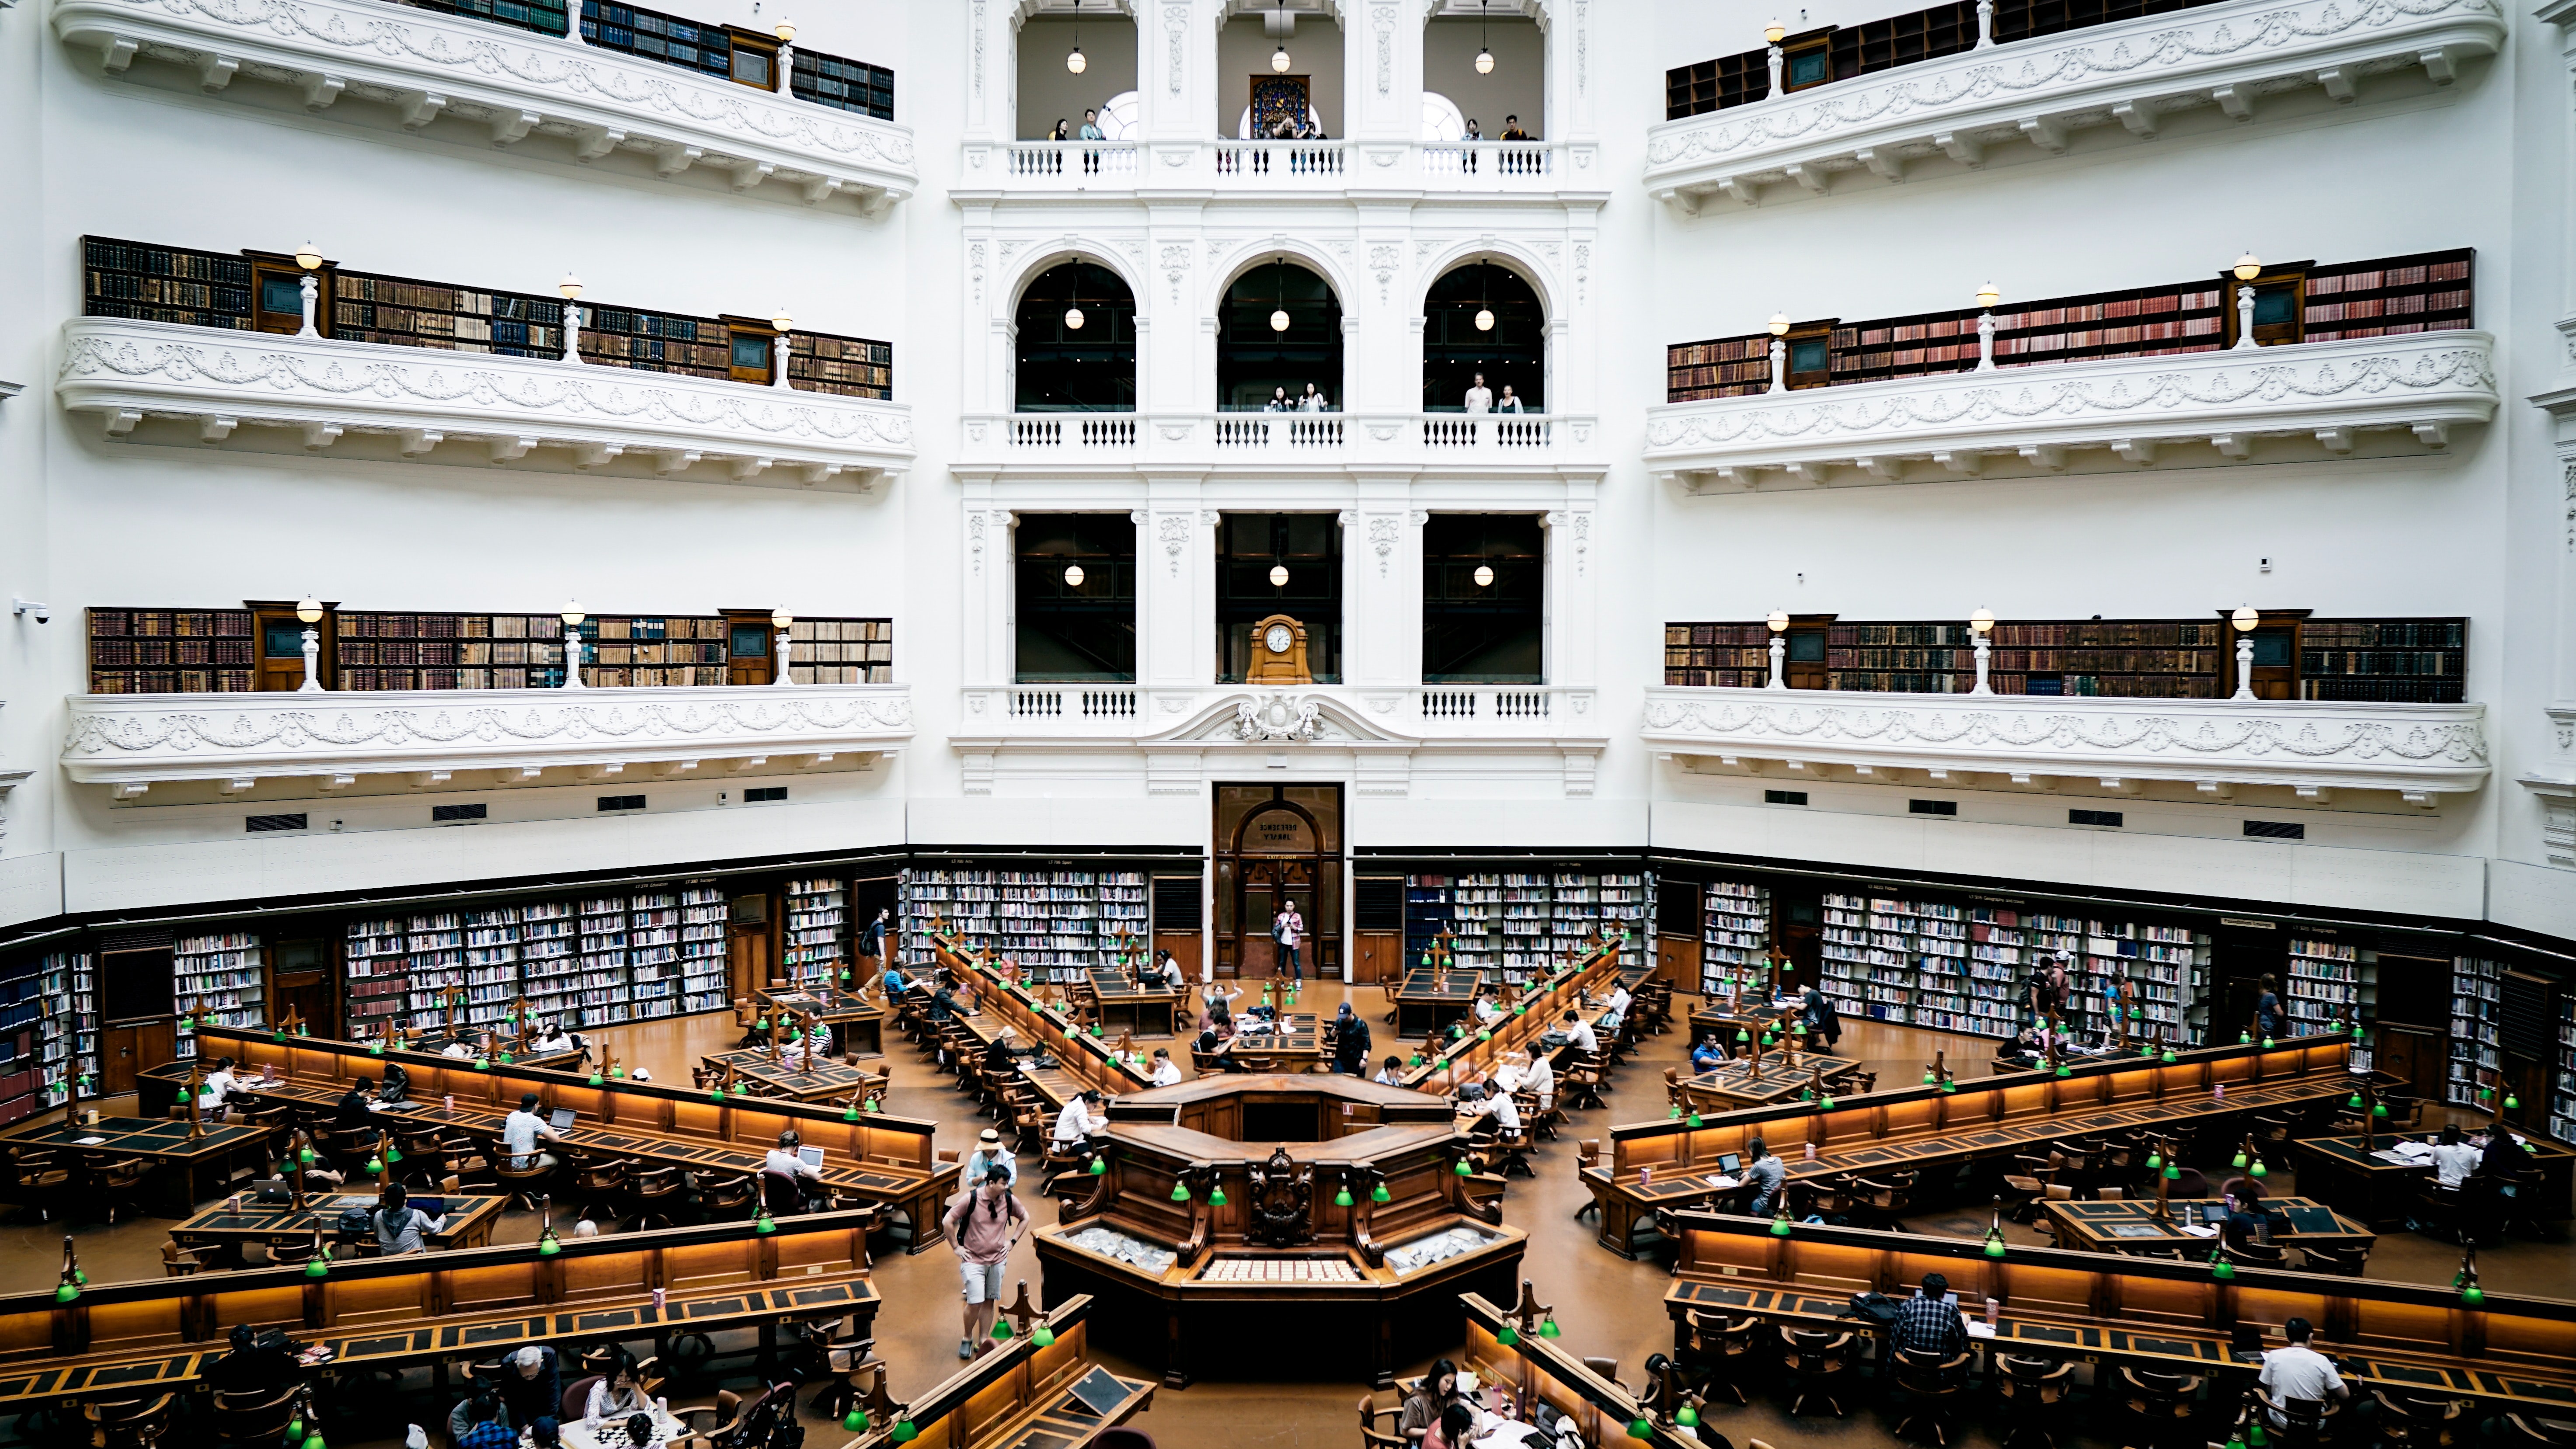 architecture et bibliothèque